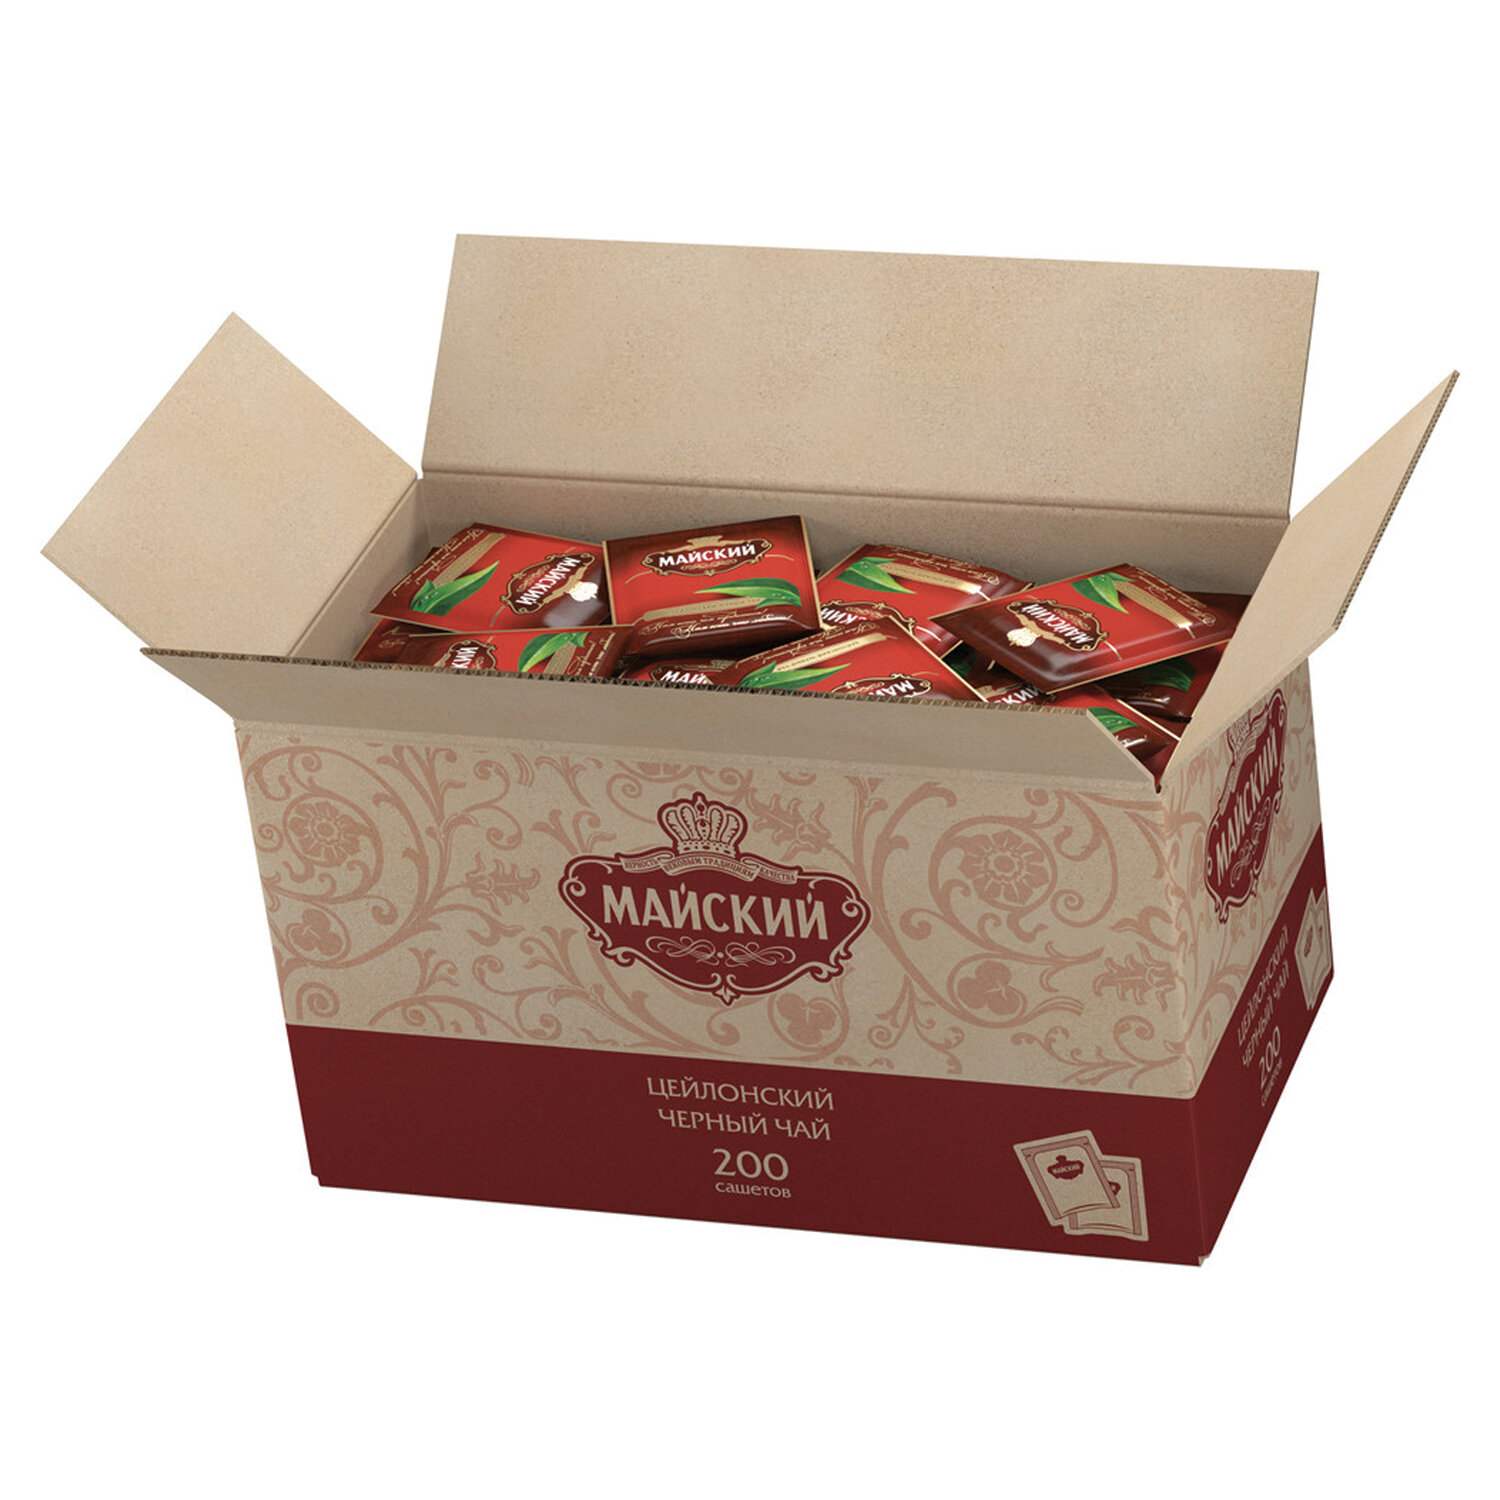 Чай МАЙСКИЙ 101009, комплект 2 упаковки по 200 пакетиков